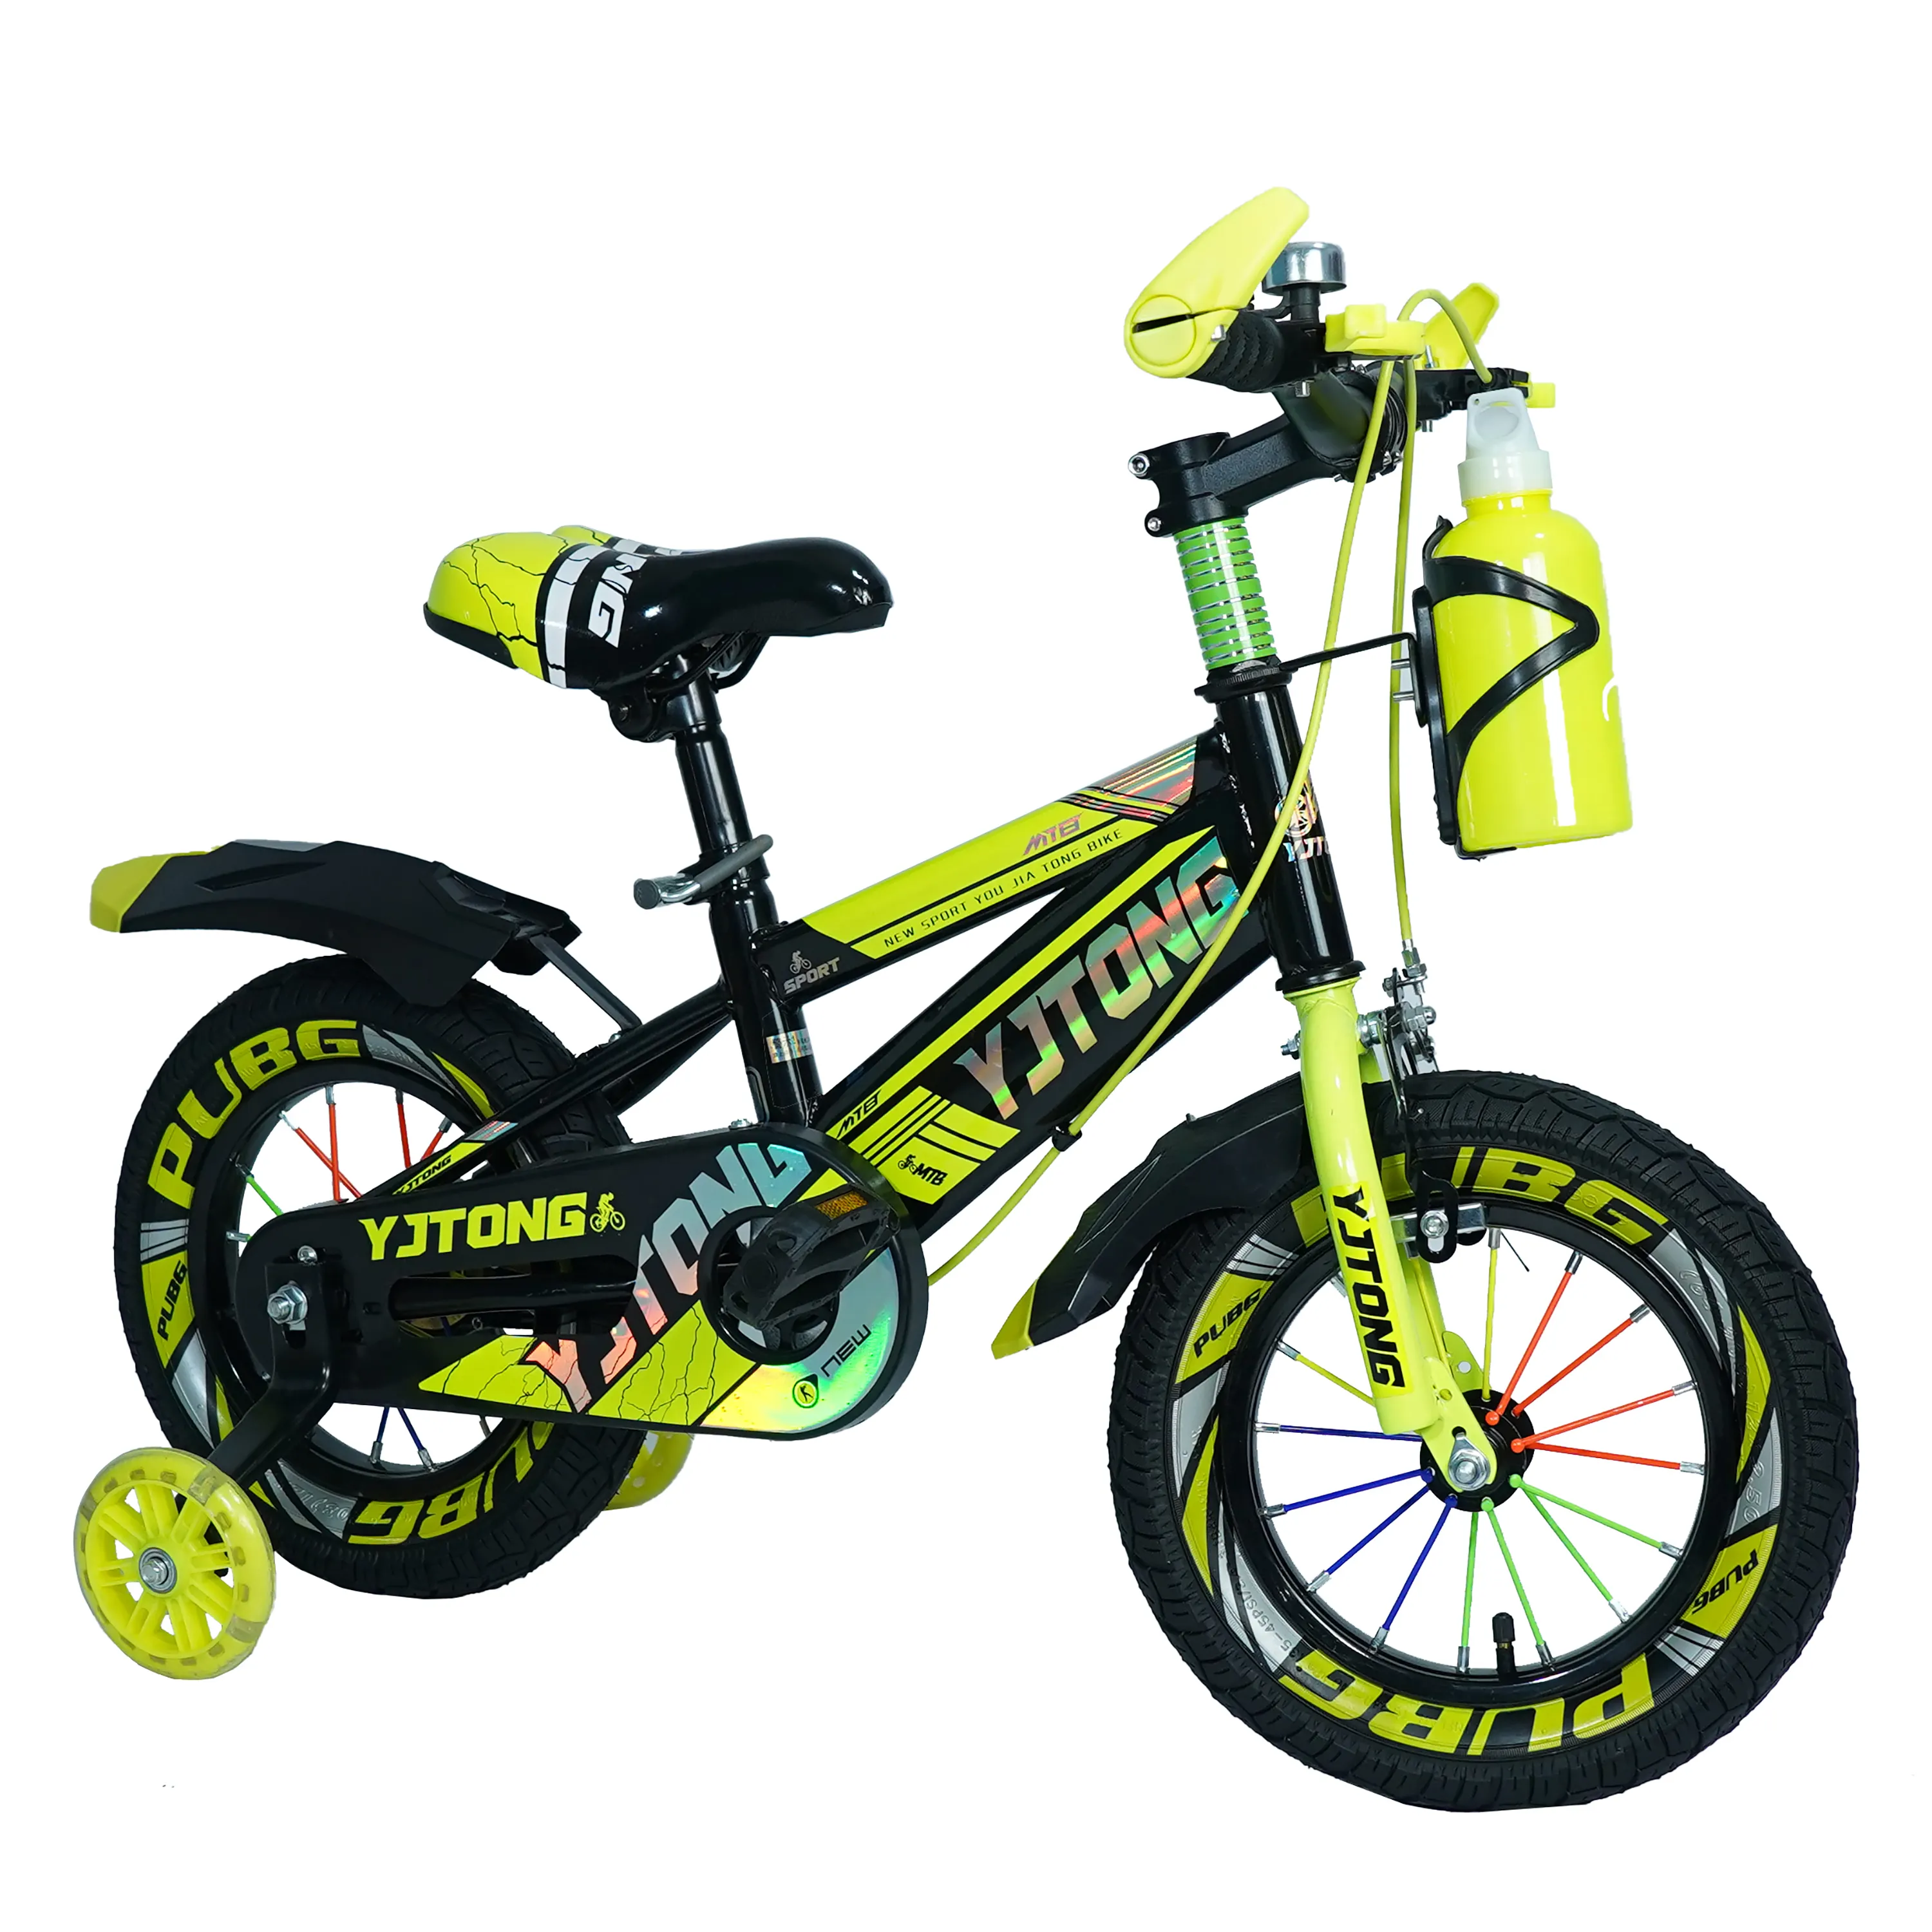 Bicicleta para niños barata con rueda de entrenamiento, bicicleta para niños, bicicleta de montaña, bicicleta para niños de 3 años